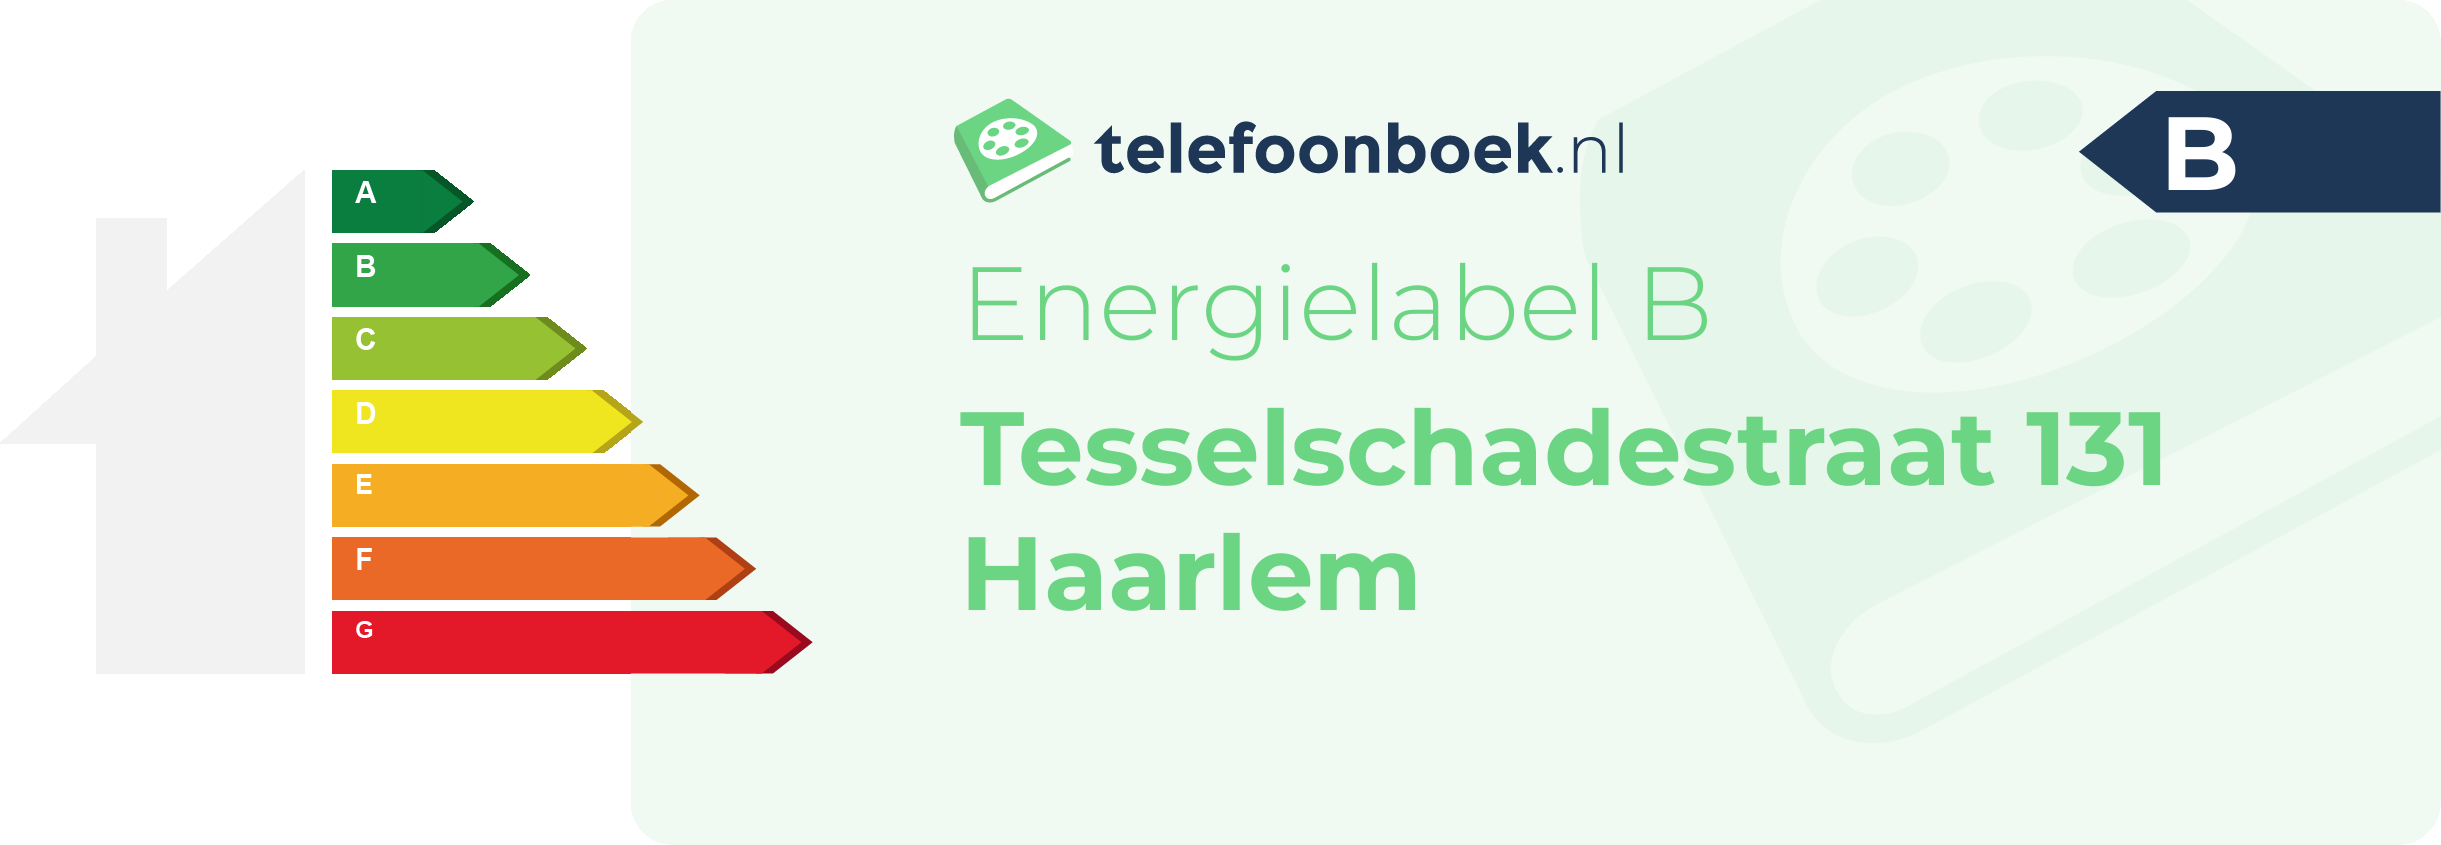 Energielabel Tesselschadestraat 131 Haarlem